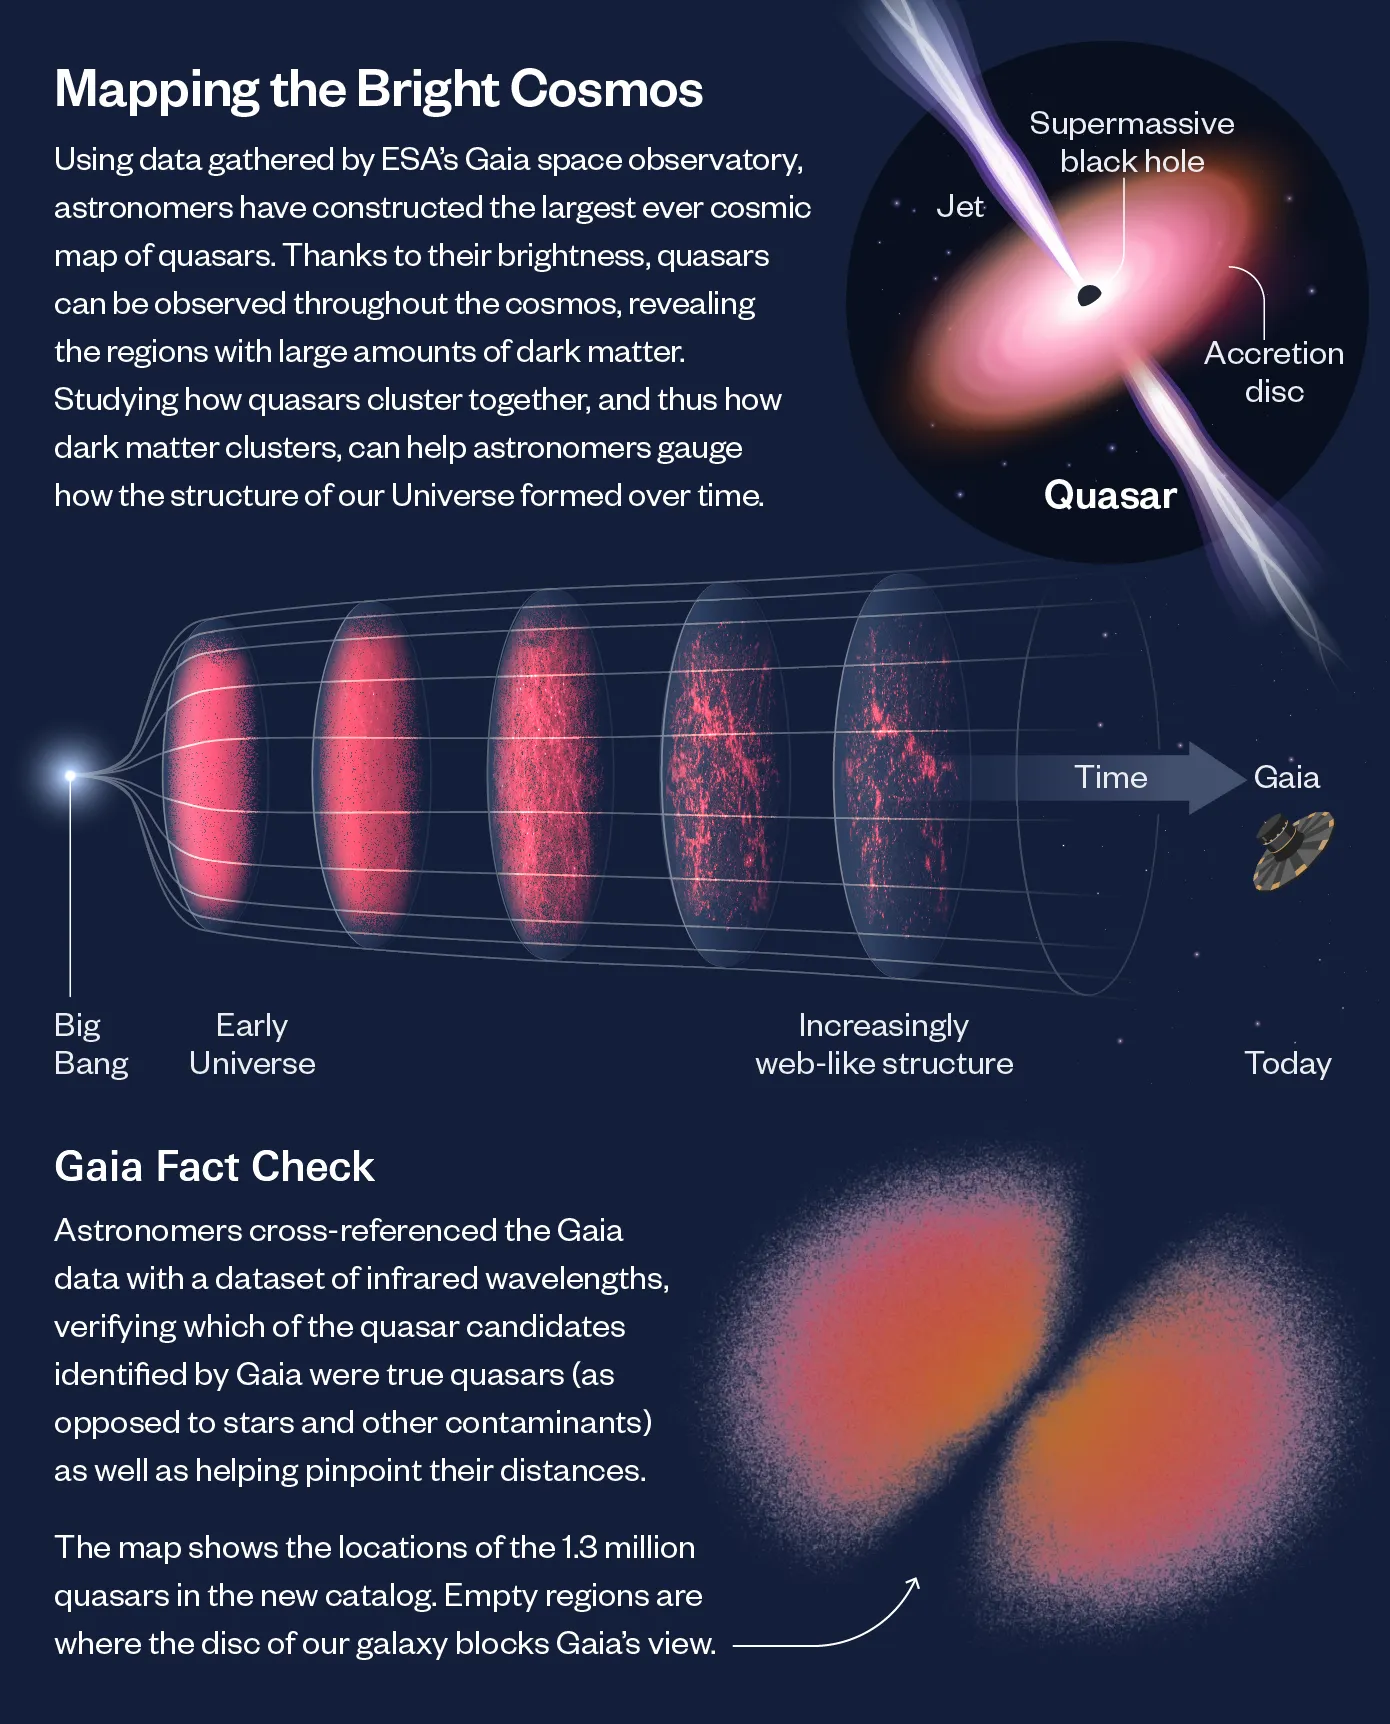 eine Infografik zeigt oben rechts einen Quasar, in der Mitte eine Zeitleiste des Universums und unten rechts die Gaia-Quasar-Karte